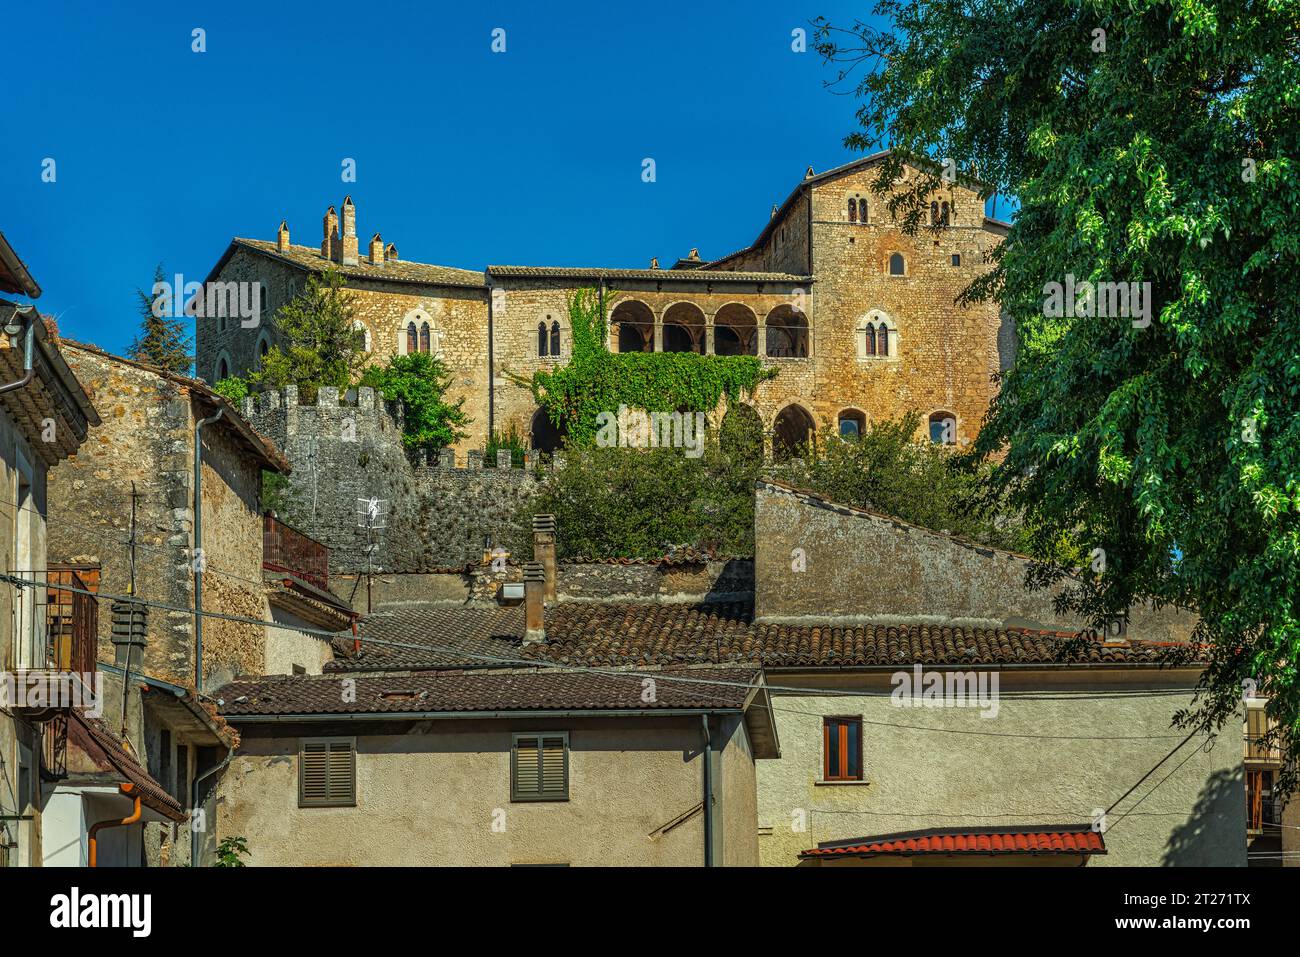 La residenza del castello del XII secolo appartenuta ai conti di Marsi domina la città medievale di Gagliano Aterno. Gagliano Aterno, Abruzzo Foto Stock